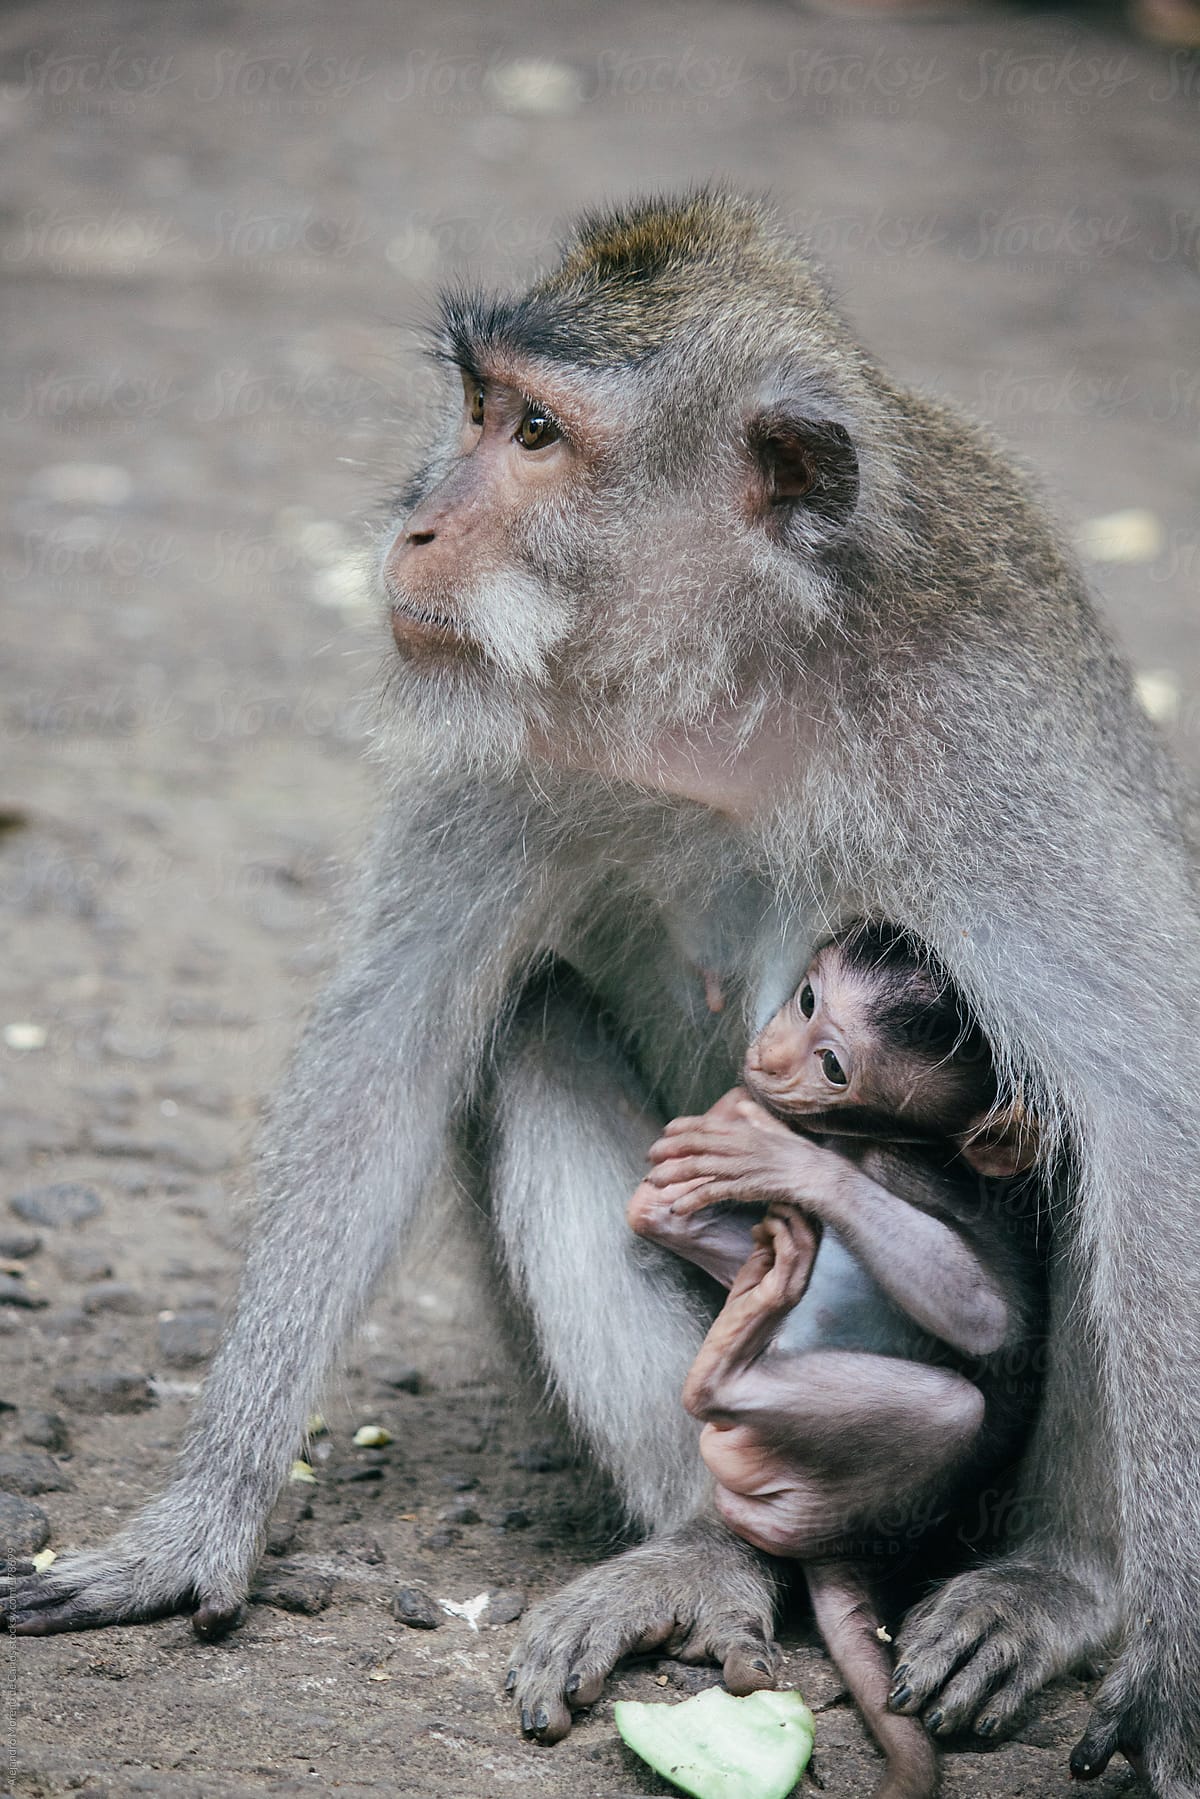 Monkey nursing her baby